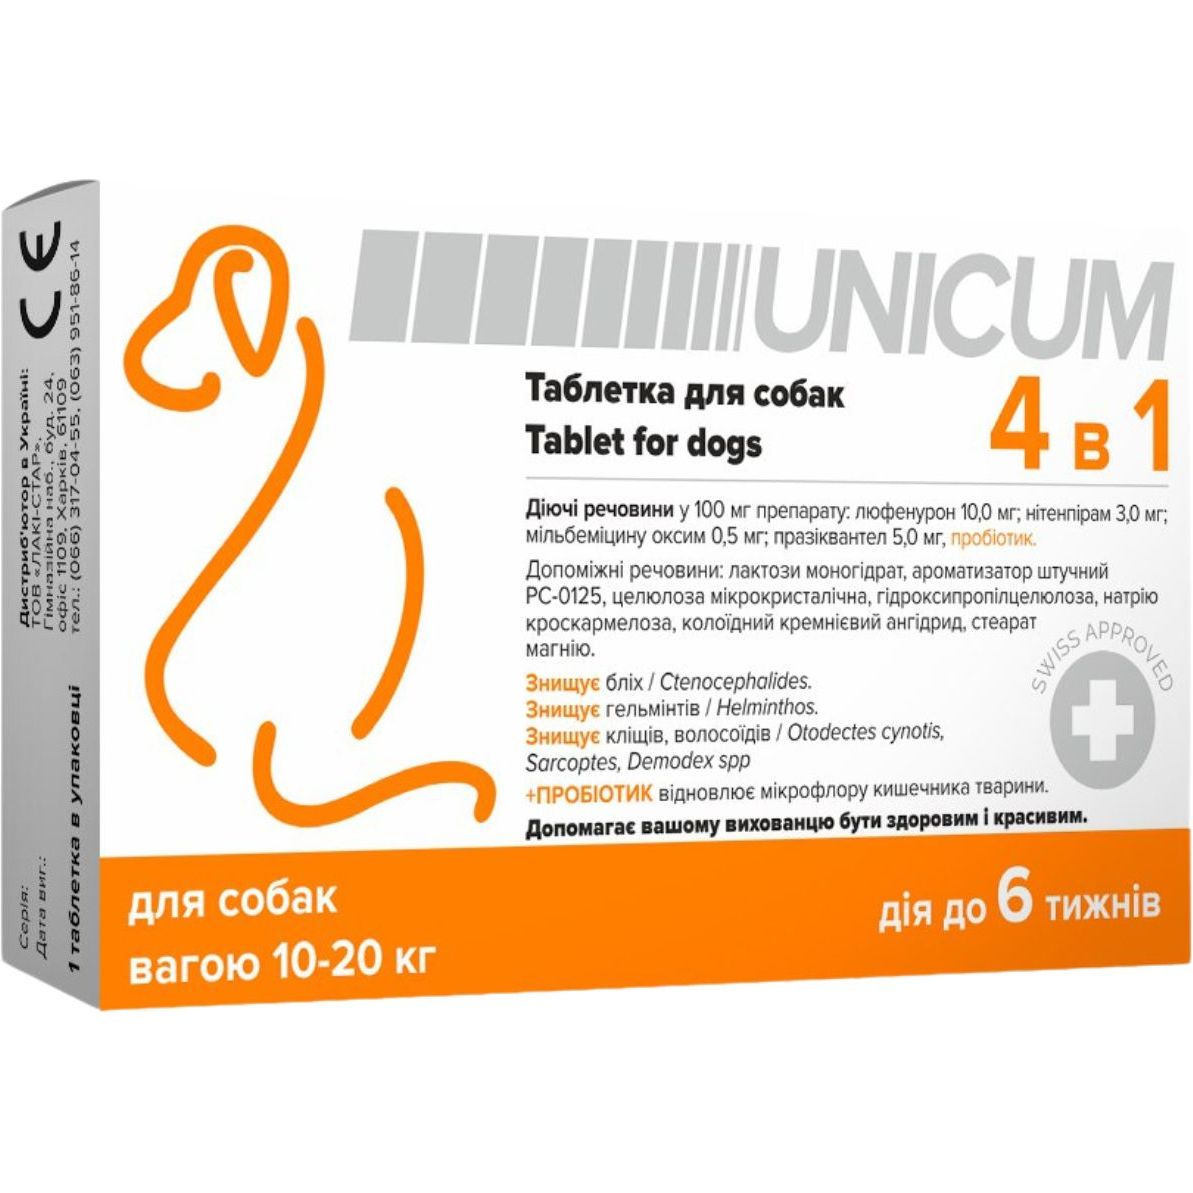 Таблетка для собак Unicum 4 в 1 от блох, клещей, гильминтов, с пробиотиком 10-20 кг - фото 1